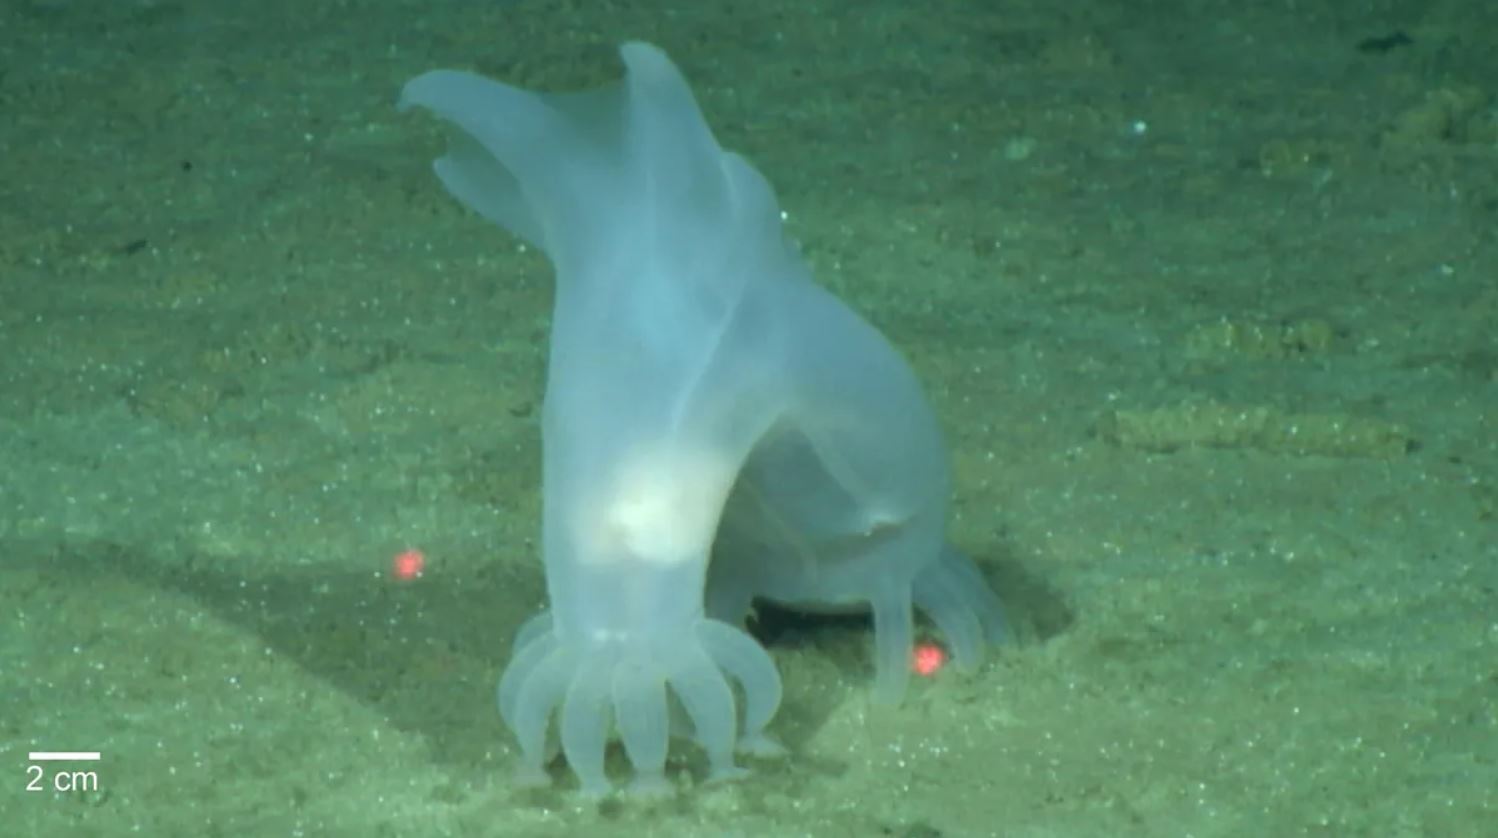 Peniagone vitrea es una de las especies de aguas profundas más antiguas conocidas, descubierta en la década de 1870 en la expedición Challenger